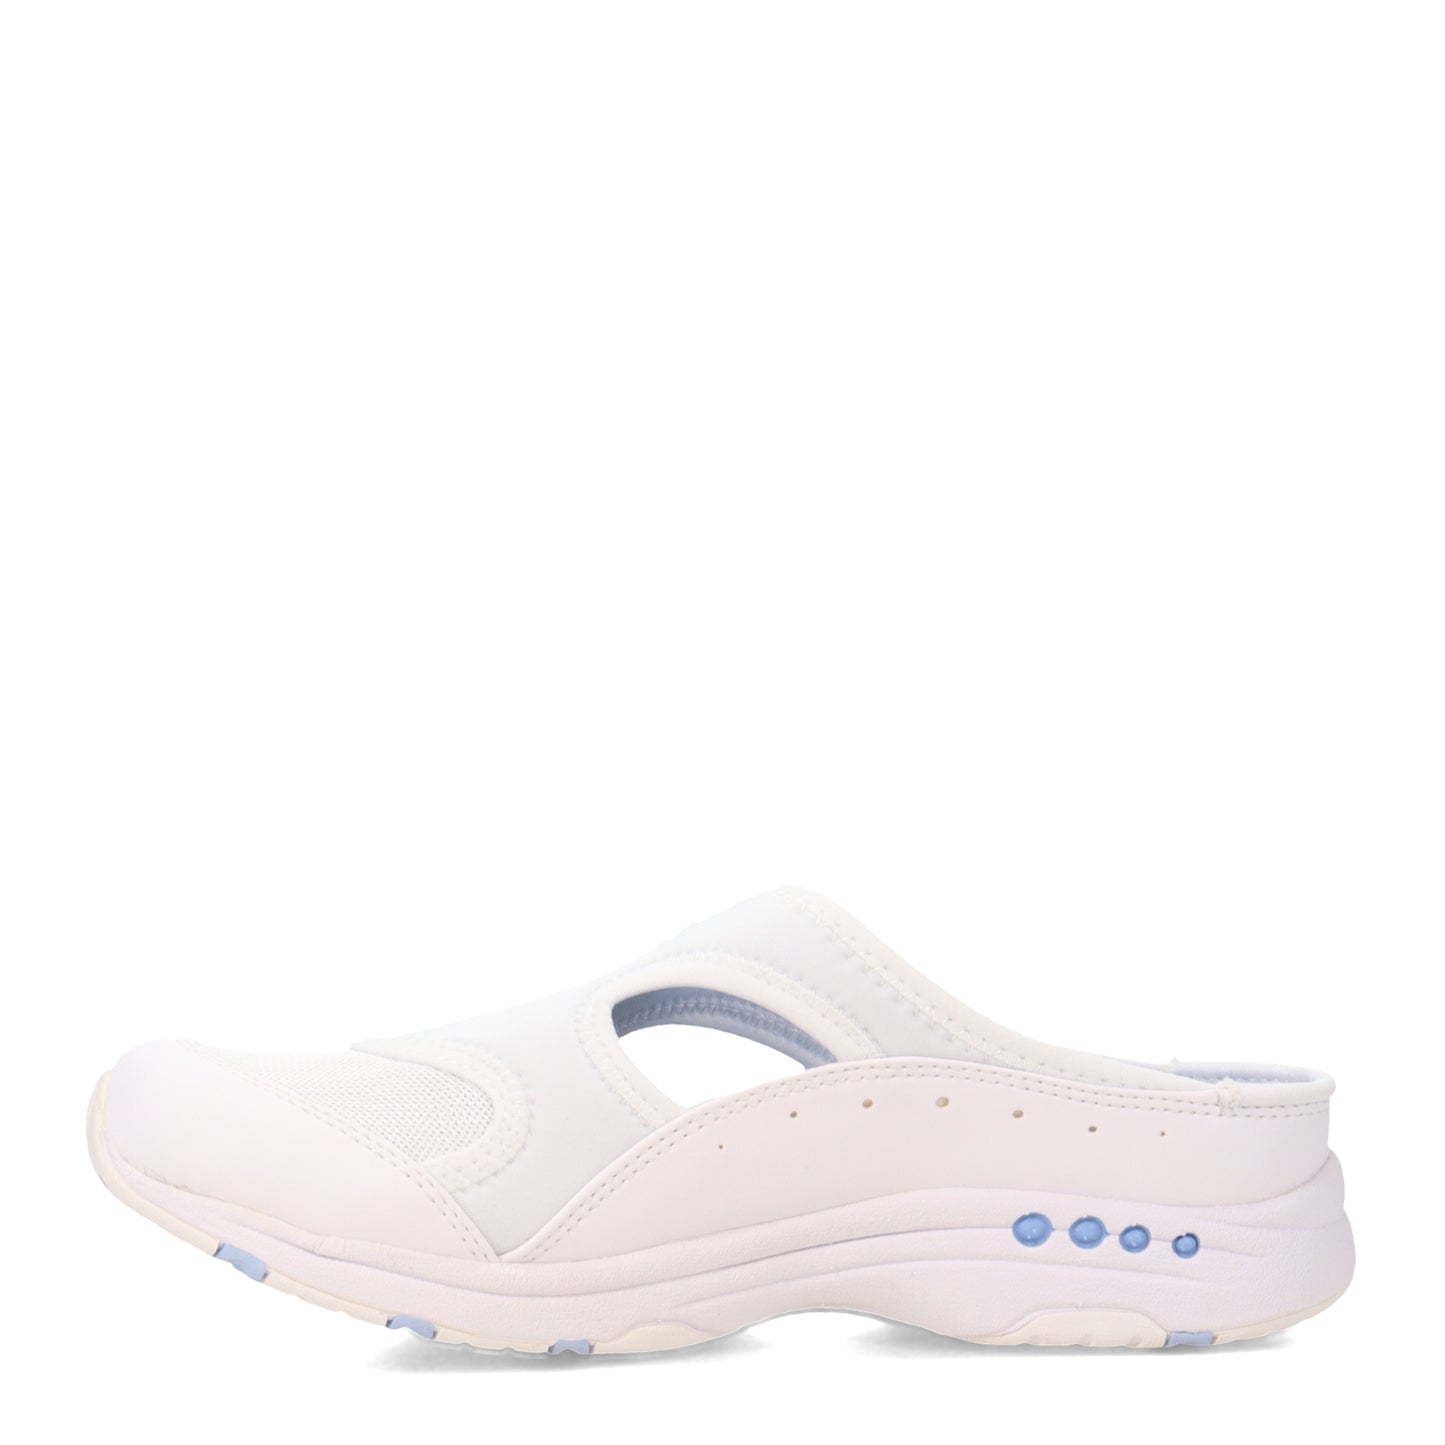 Peltz Shoes  Women's Easy Spirit Traver 2 Slip-On Sneaker WHITE BLUE TRAVER2-140